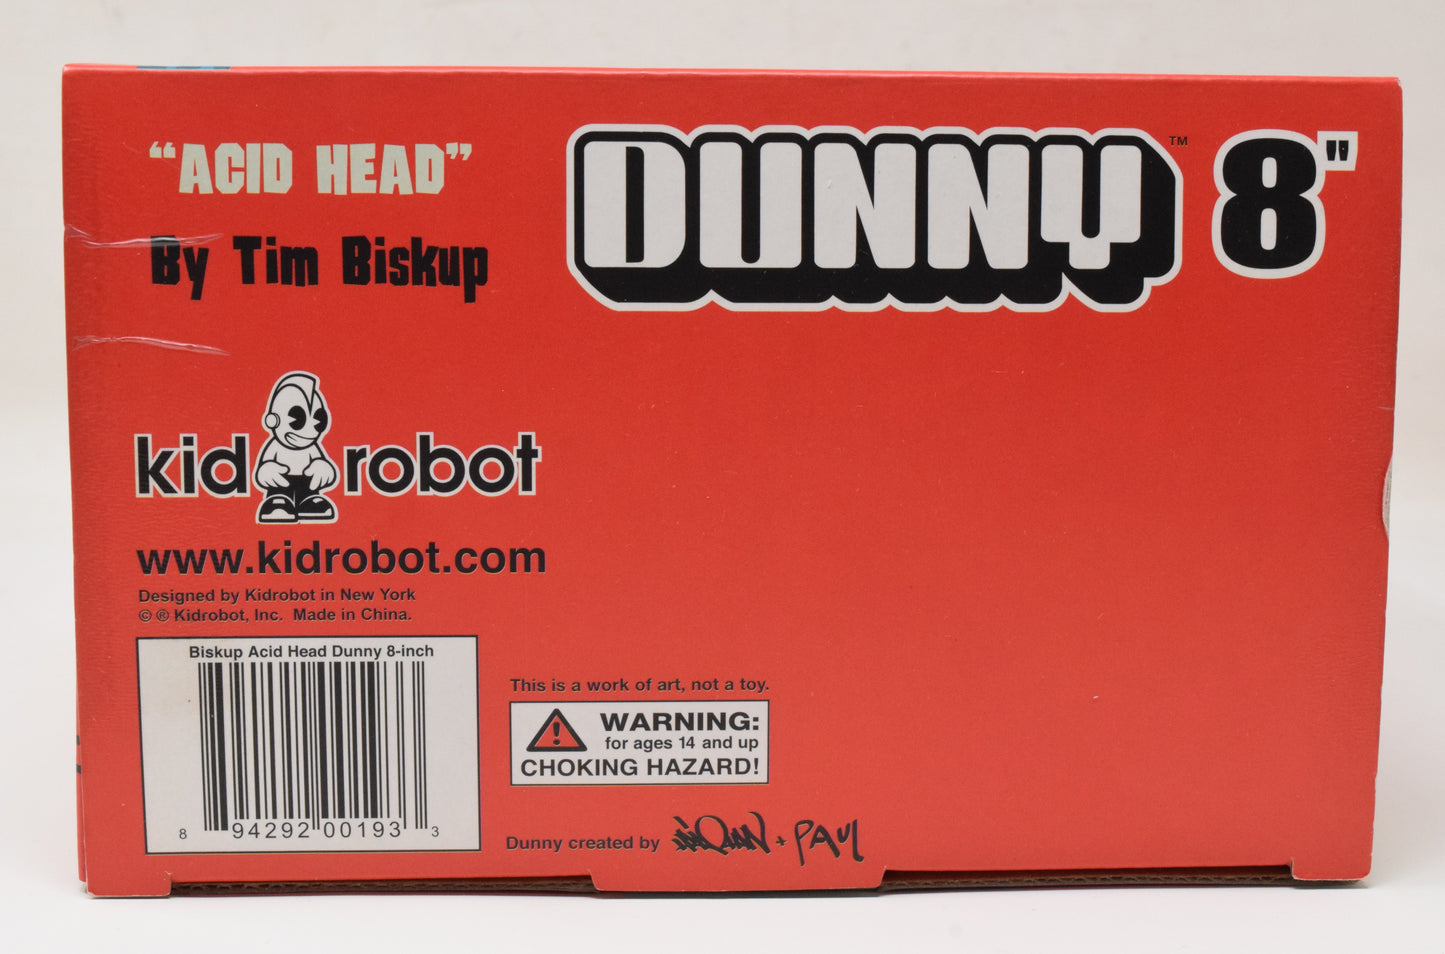 I Love Acid Head Dunny 9" Tim Biskup Kidrobot Vinyl Figure